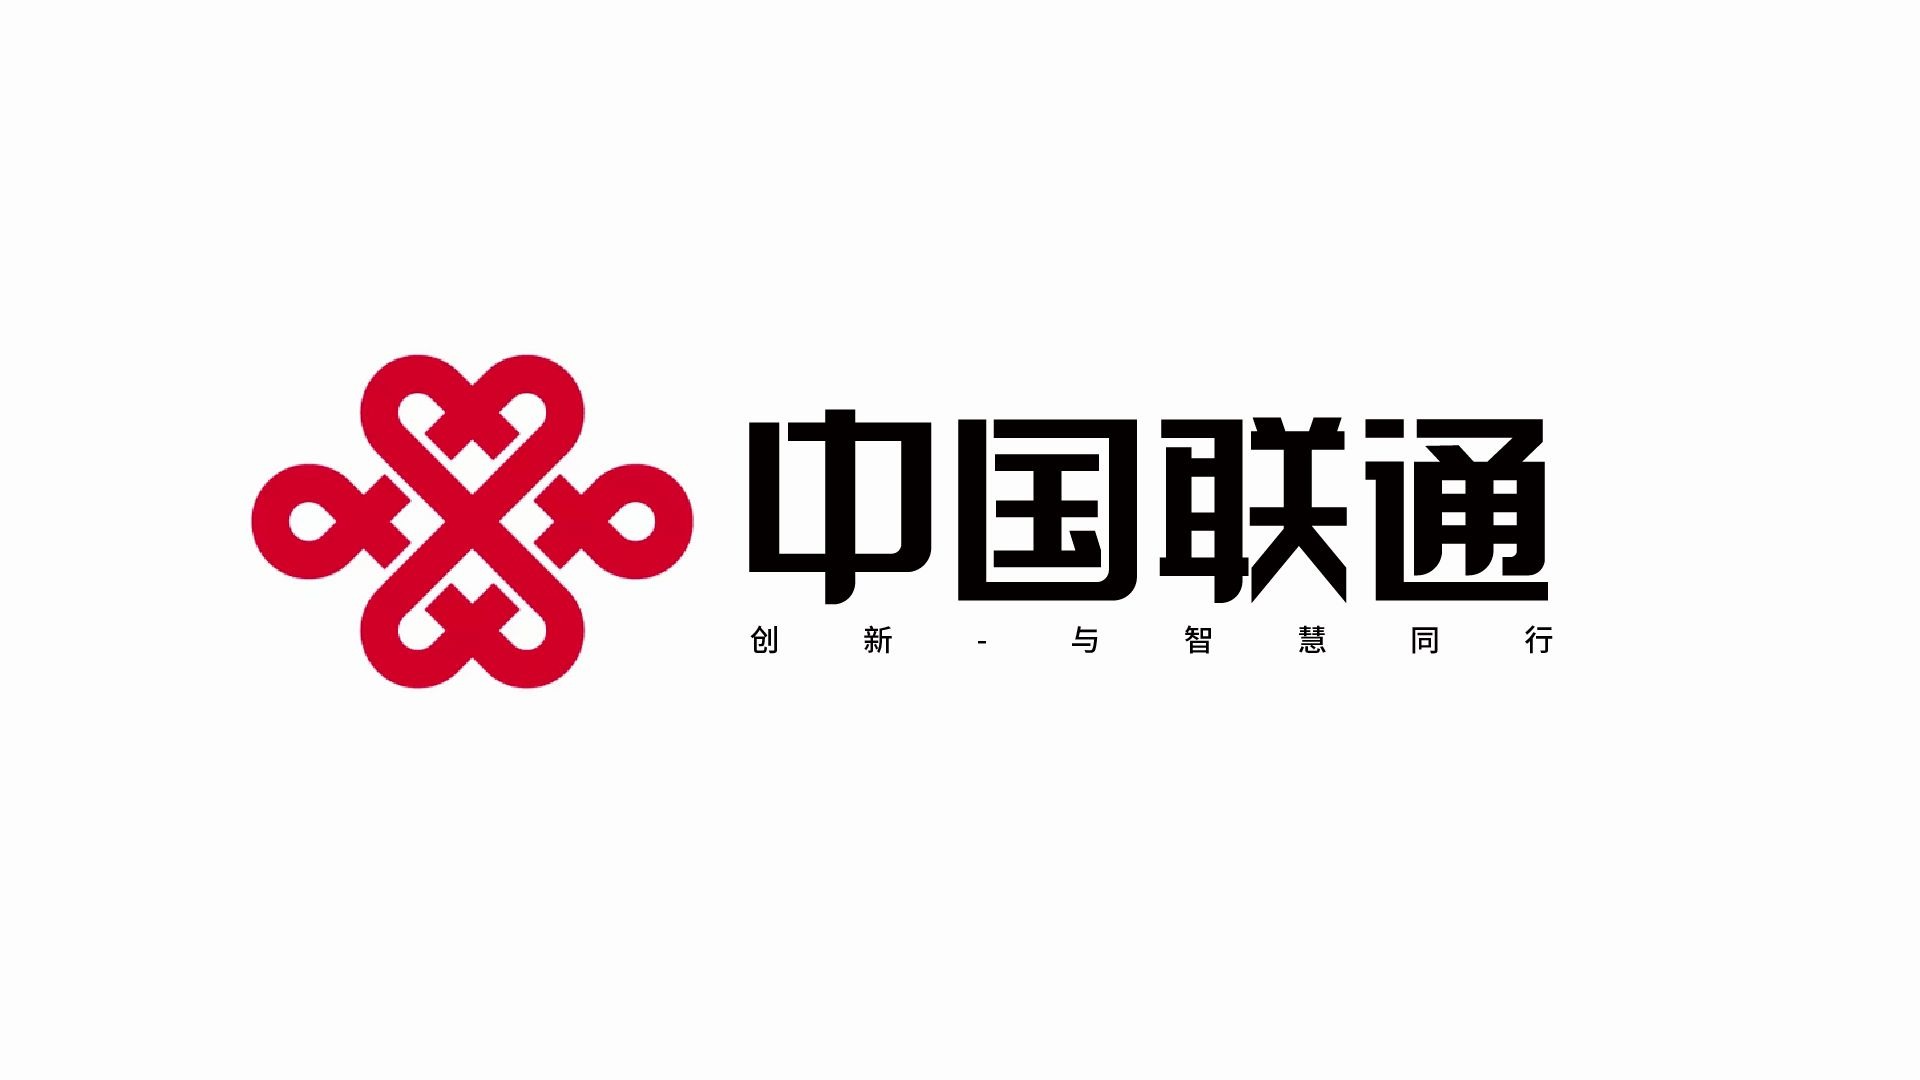 中国联通logo字体升级改